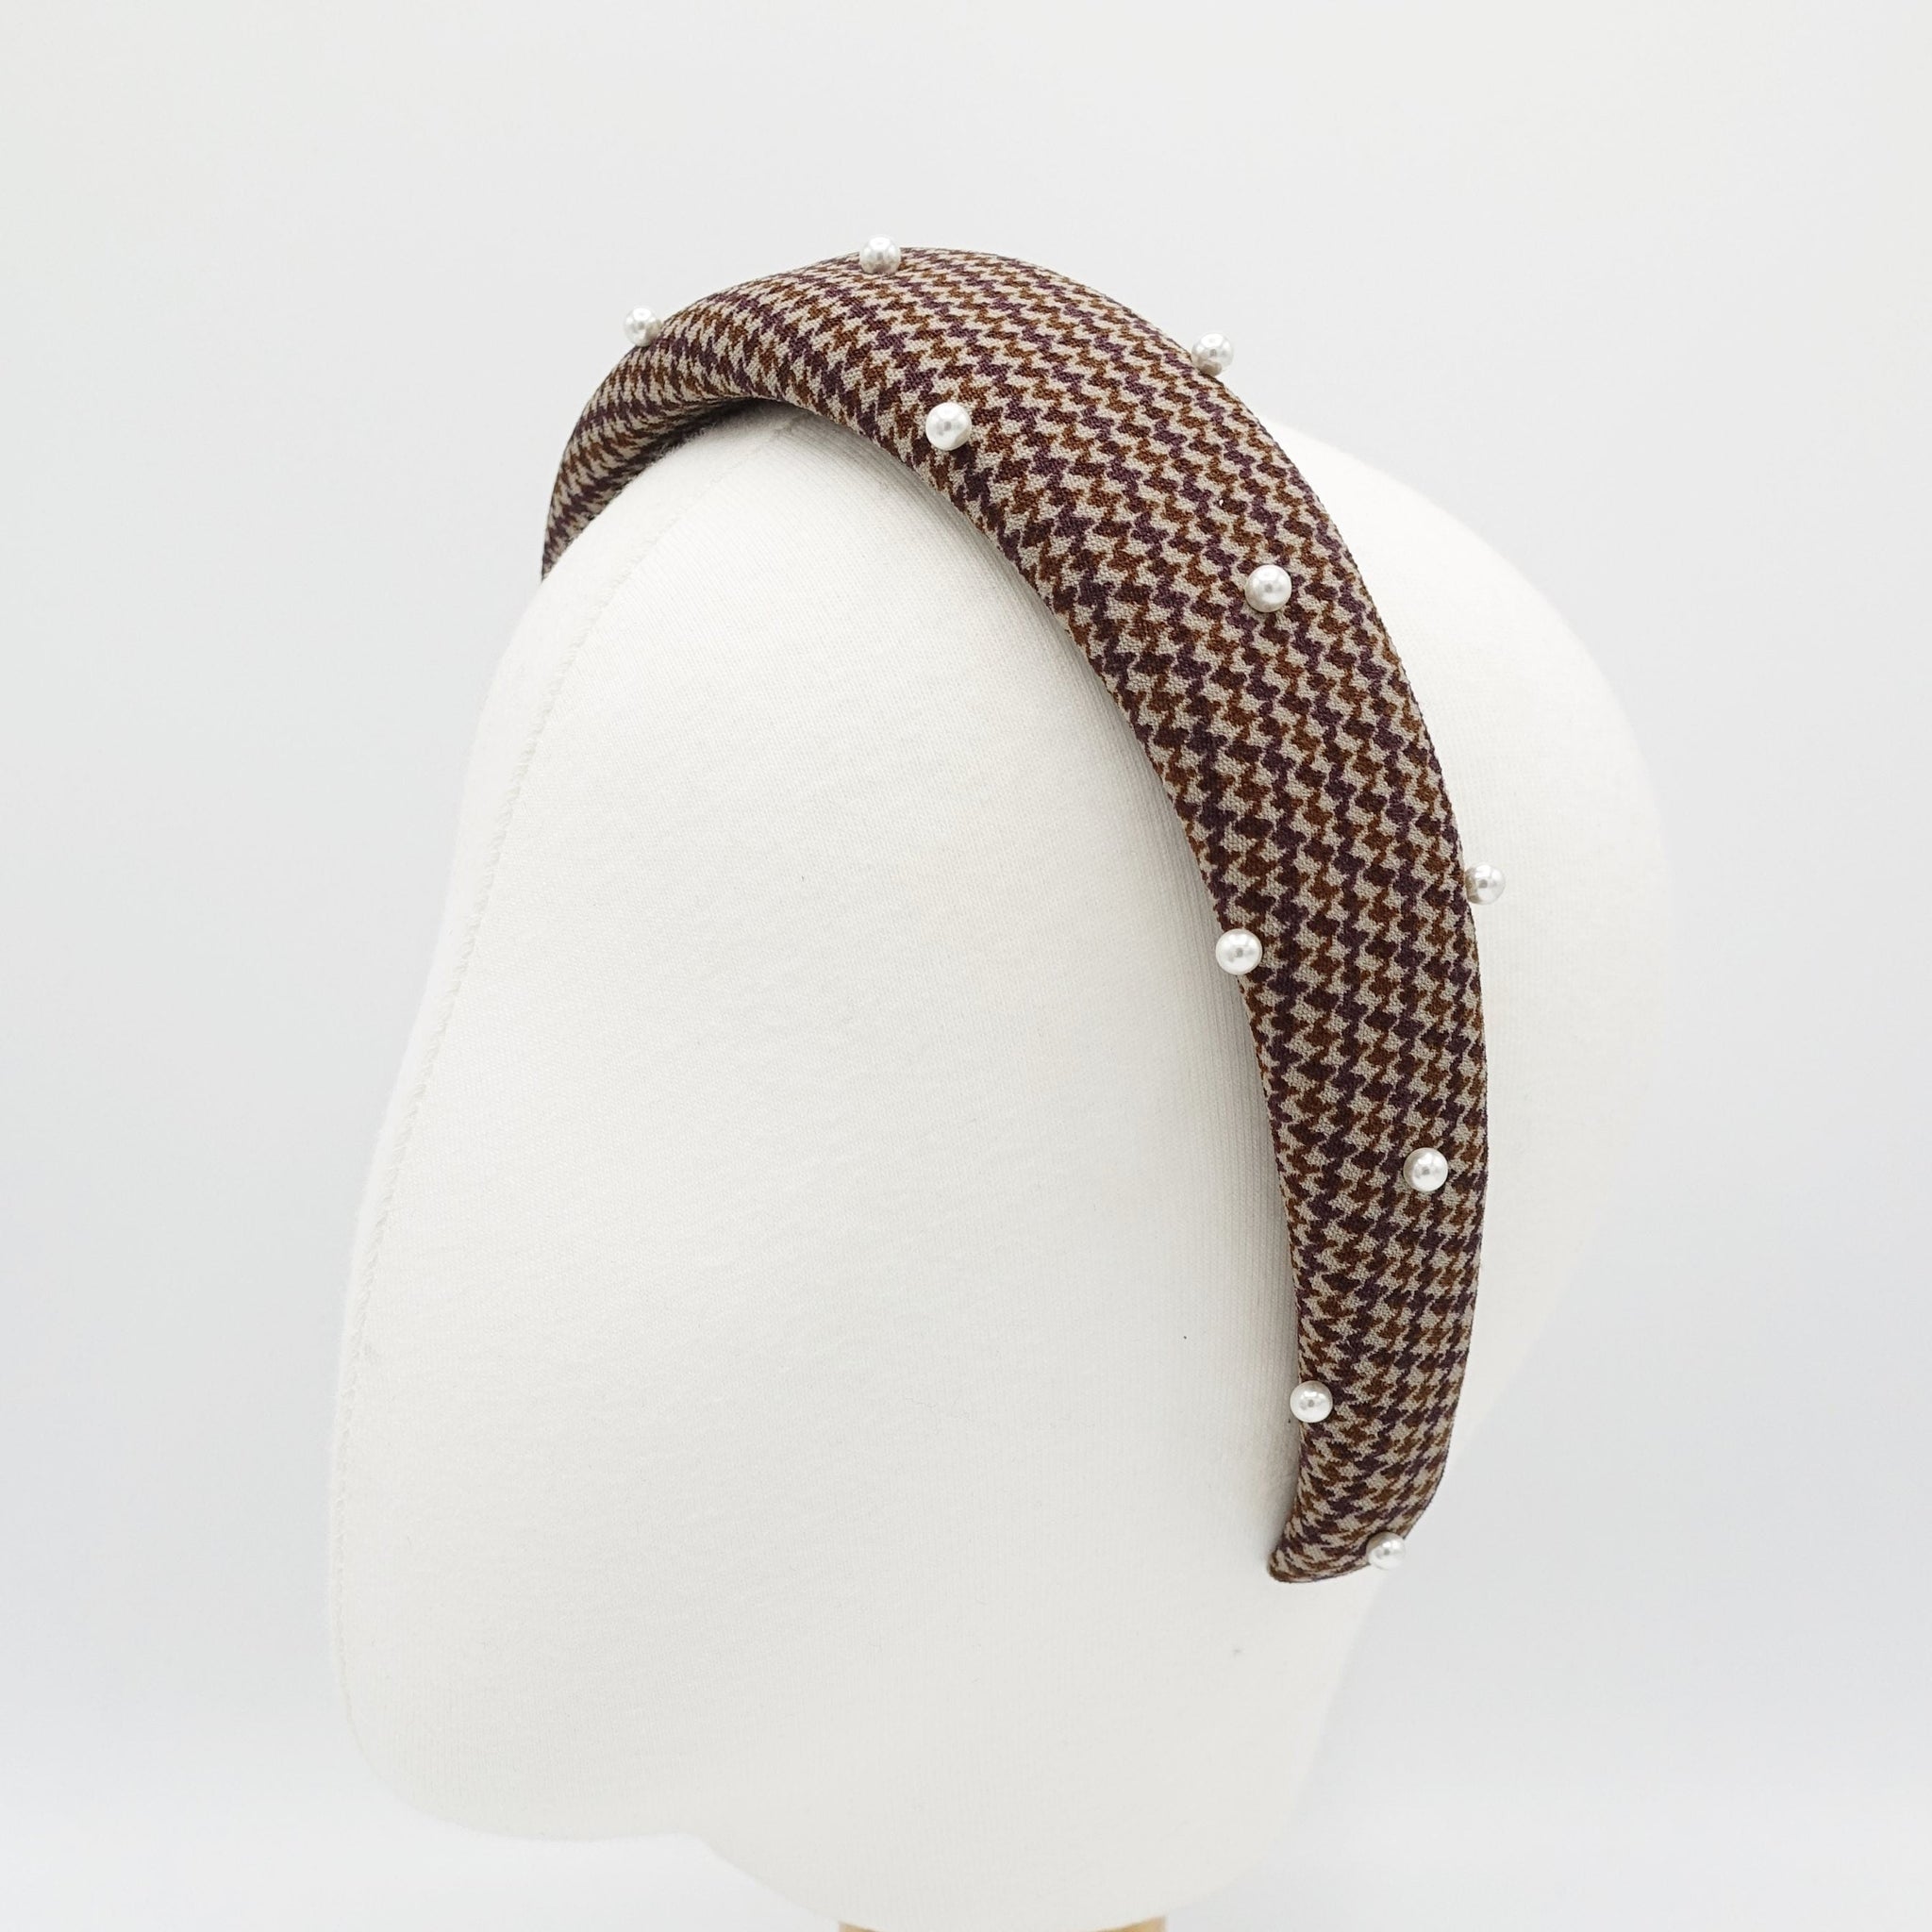 veryshine.com Headband houndstooth check padded headband pearl hairband classy hair accessory for women